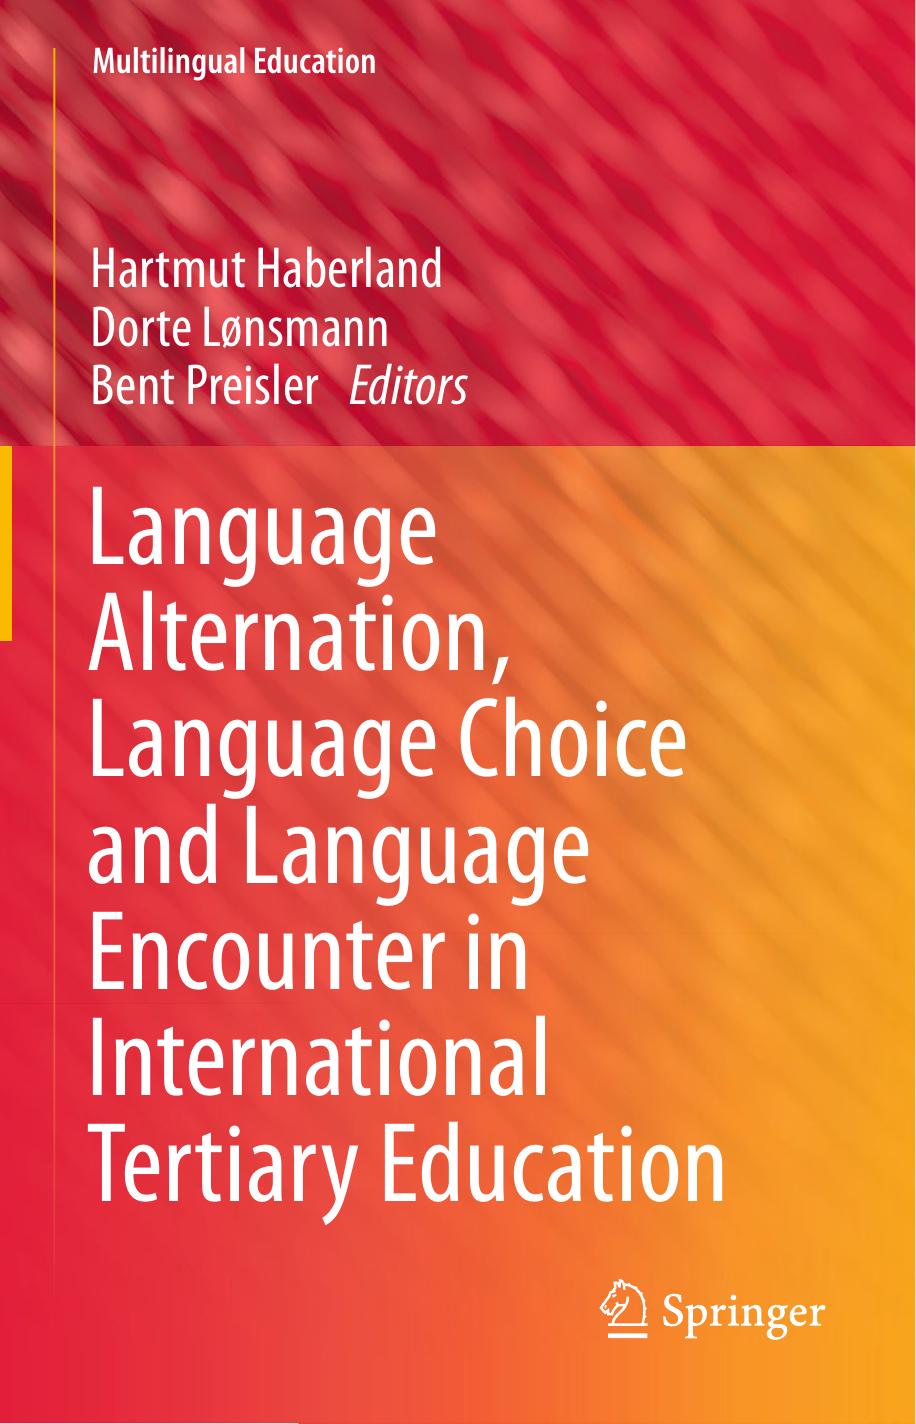 Language Alternation, Language Choice and Language Encounter, 2013